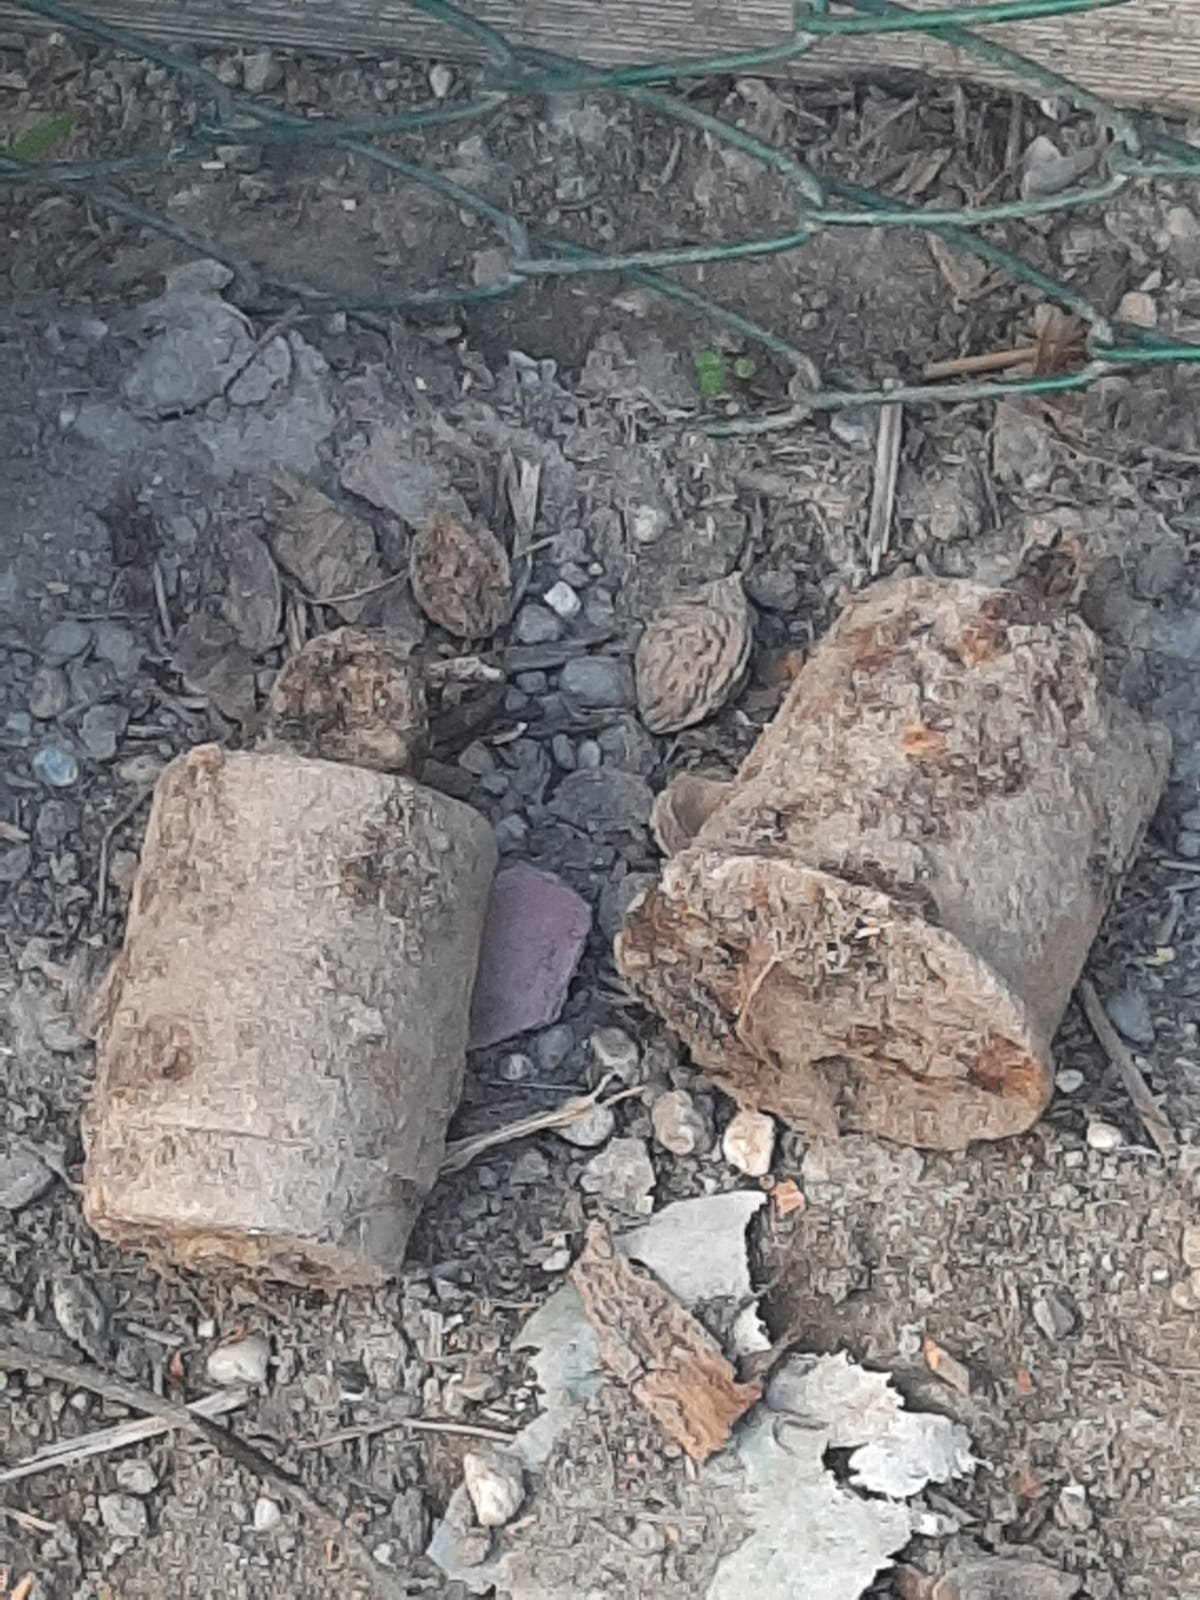 Tre granate scoperte in un pollaio a Casale: abitazione evacuata